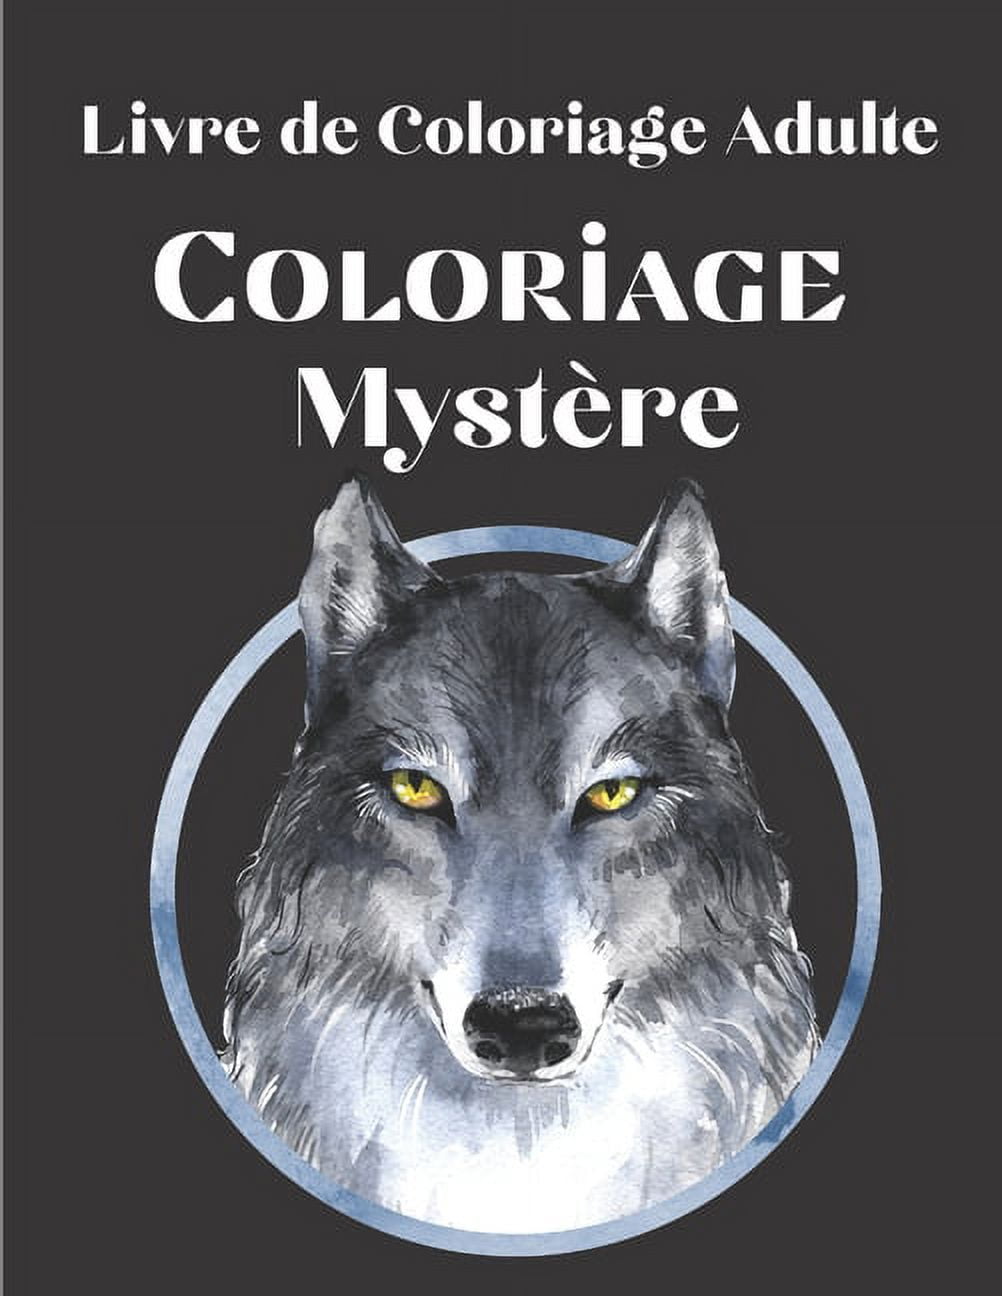 Livre de Coloriage Adulte - Coloriage Mystère: 50 Coloriages